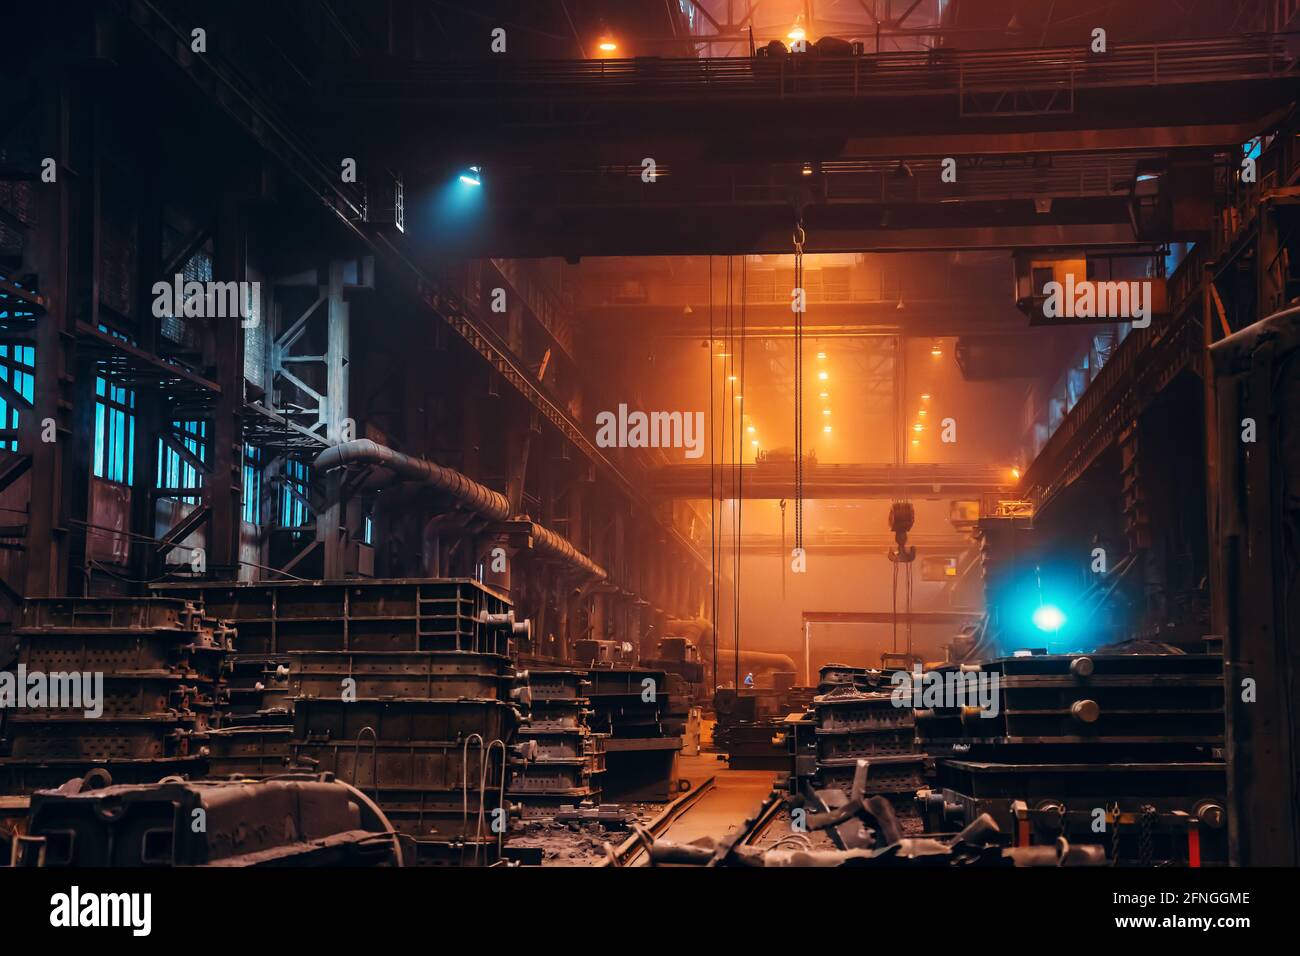 Planta metalúrgica. Producción industrial de acero. Interior del taller metalúrgico en el interior. Fábrica de acería. Fundición de la industria pesada. Foto de stock